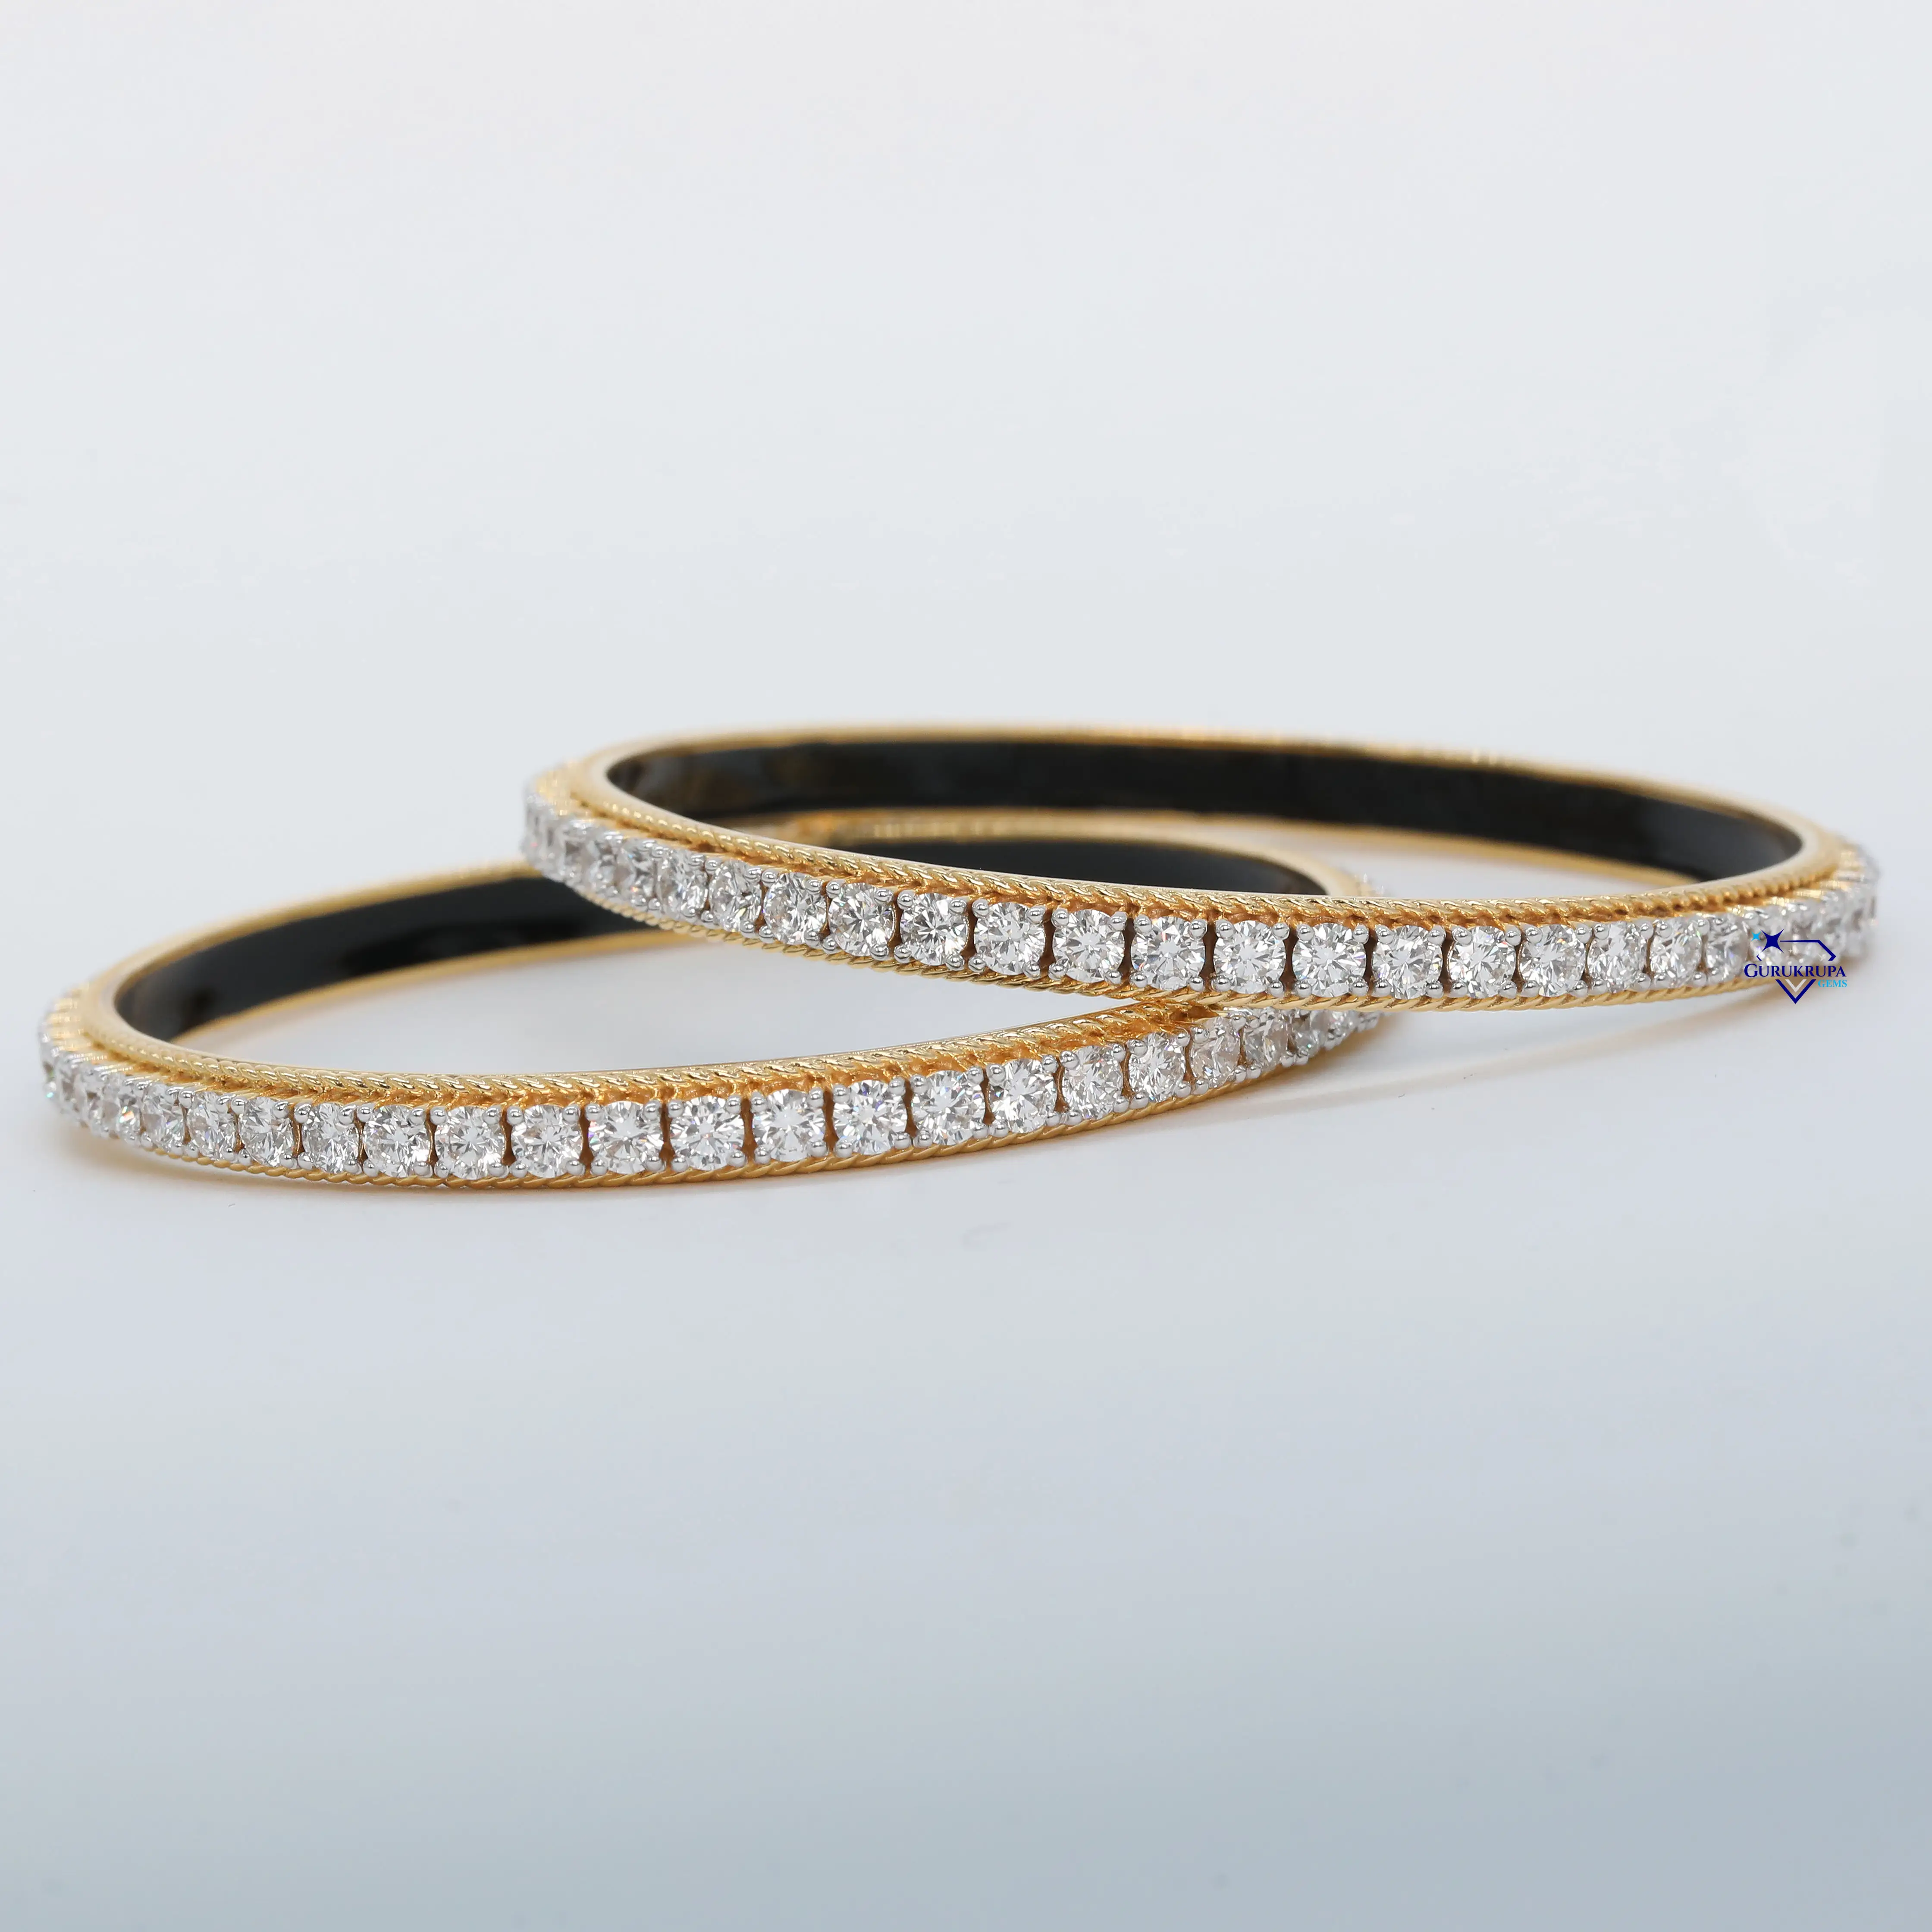 Bijoux de bracelets fantaisie pour femmes glamour avec or jaune 14 kt et diamant rond taillé en brillant cultivé en laboratoire dans la clarté VVS